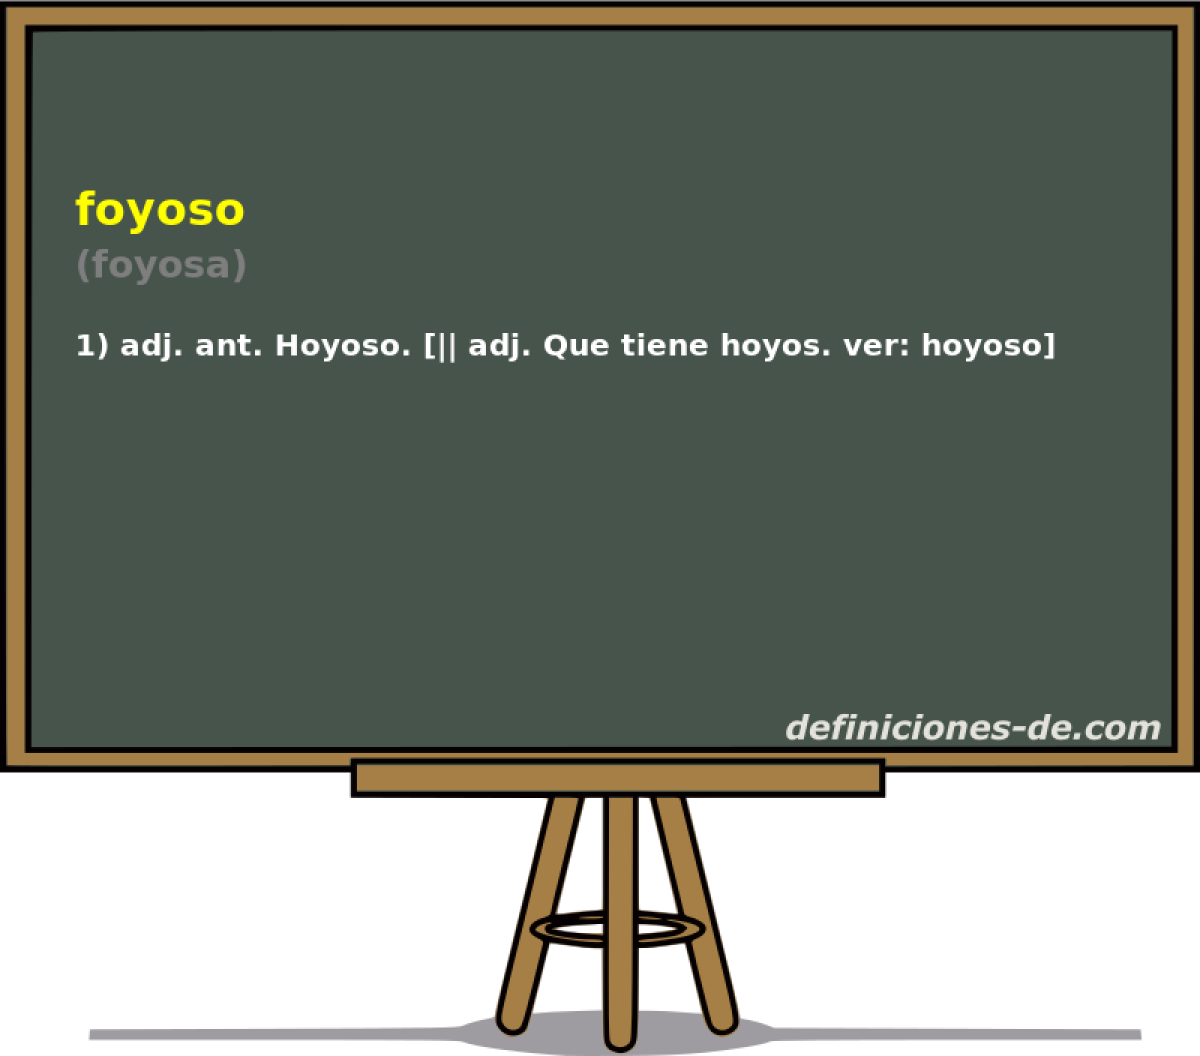 foyoso (foyosa)